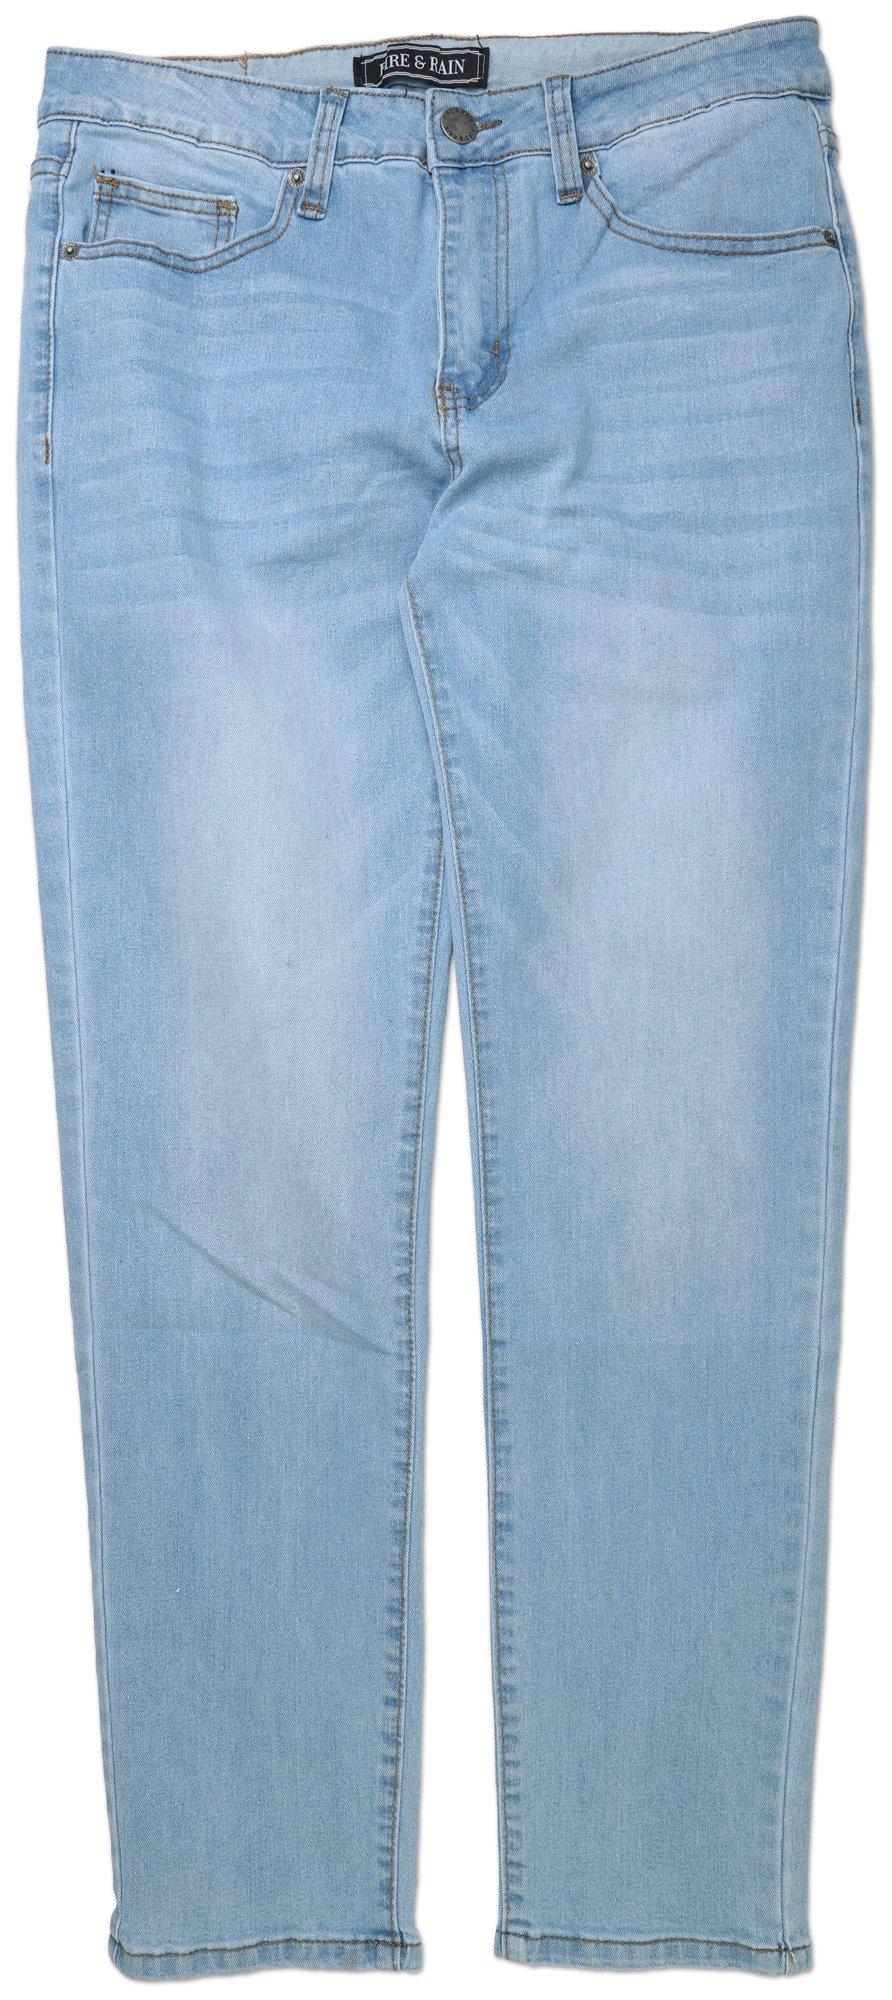 Men's Slim Fit Comfort Stretch Jeans - Light Wash